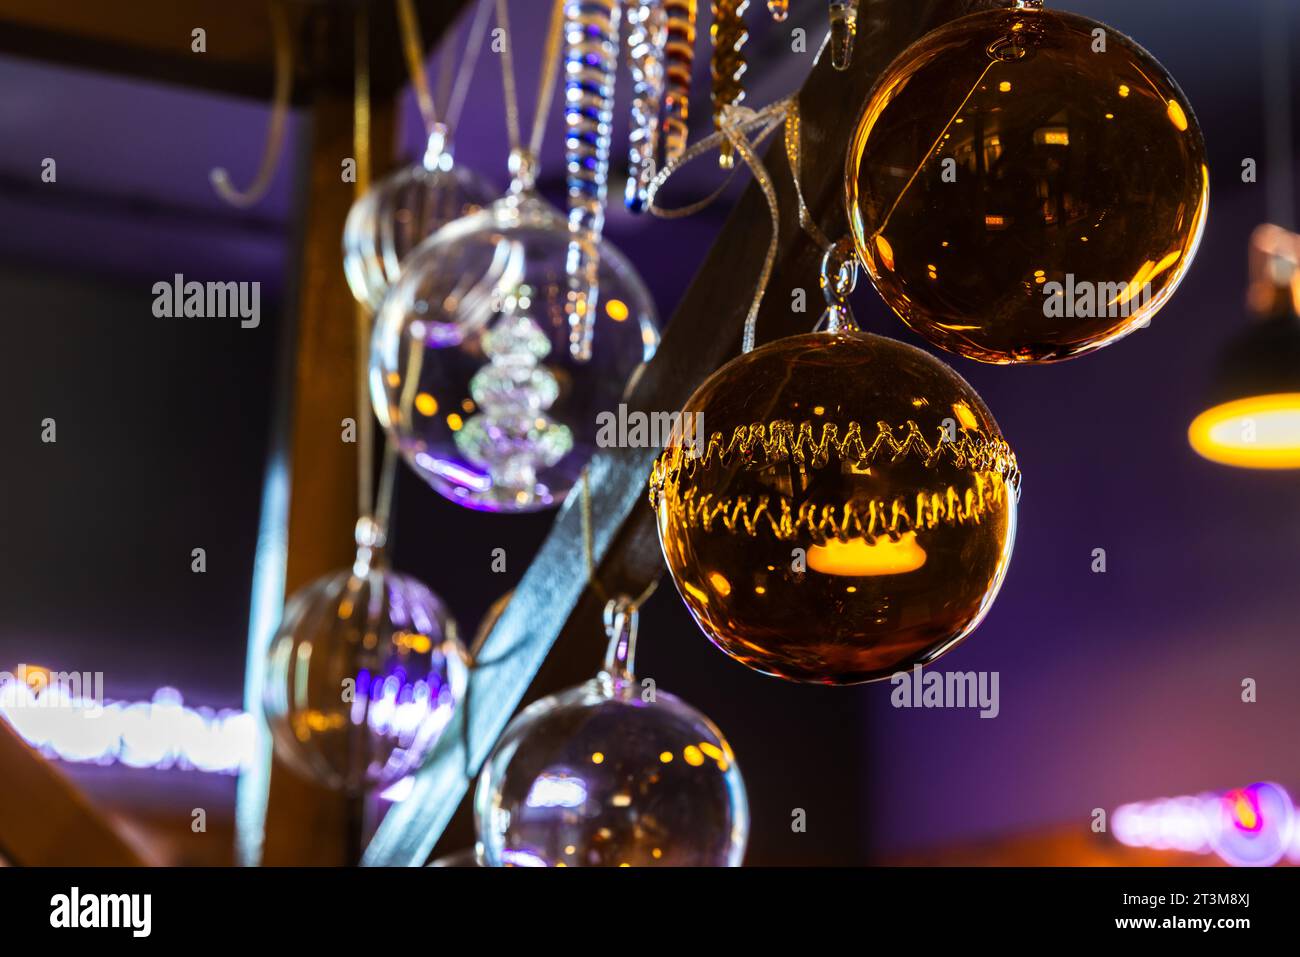 Weihnachtsdekoration hängt in einem dunklen Innenraum, farbenfrohe transparente Glaskugeln Stockfoto